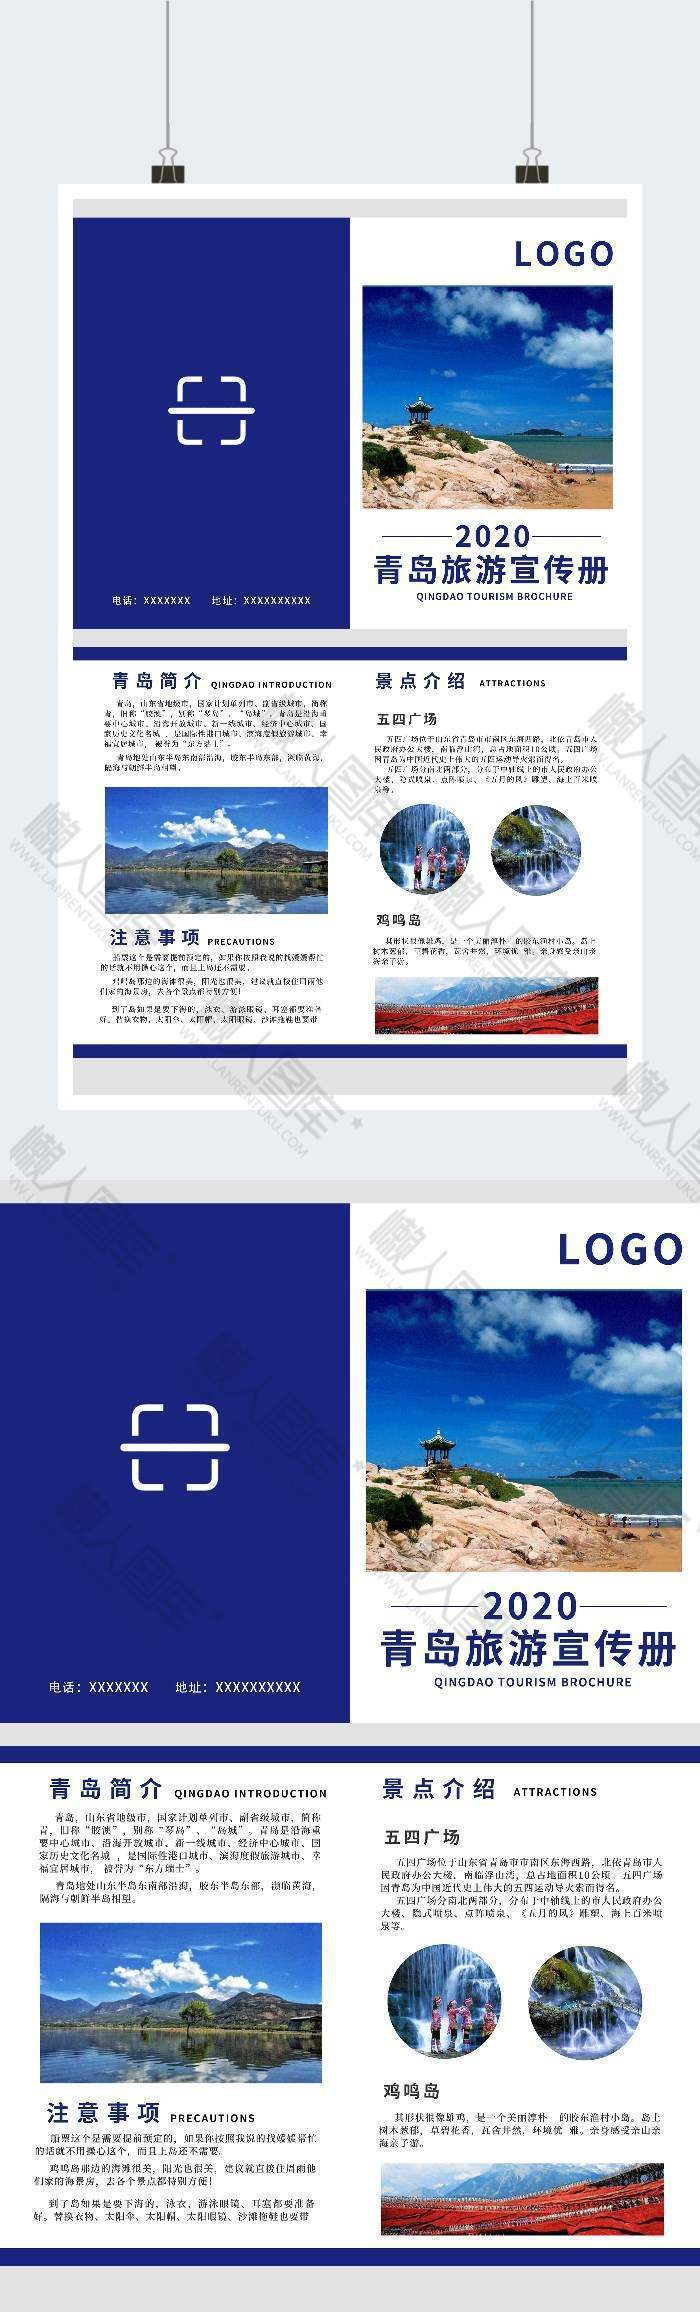 蓝色大气青岛旅游宣传广告印刷折页